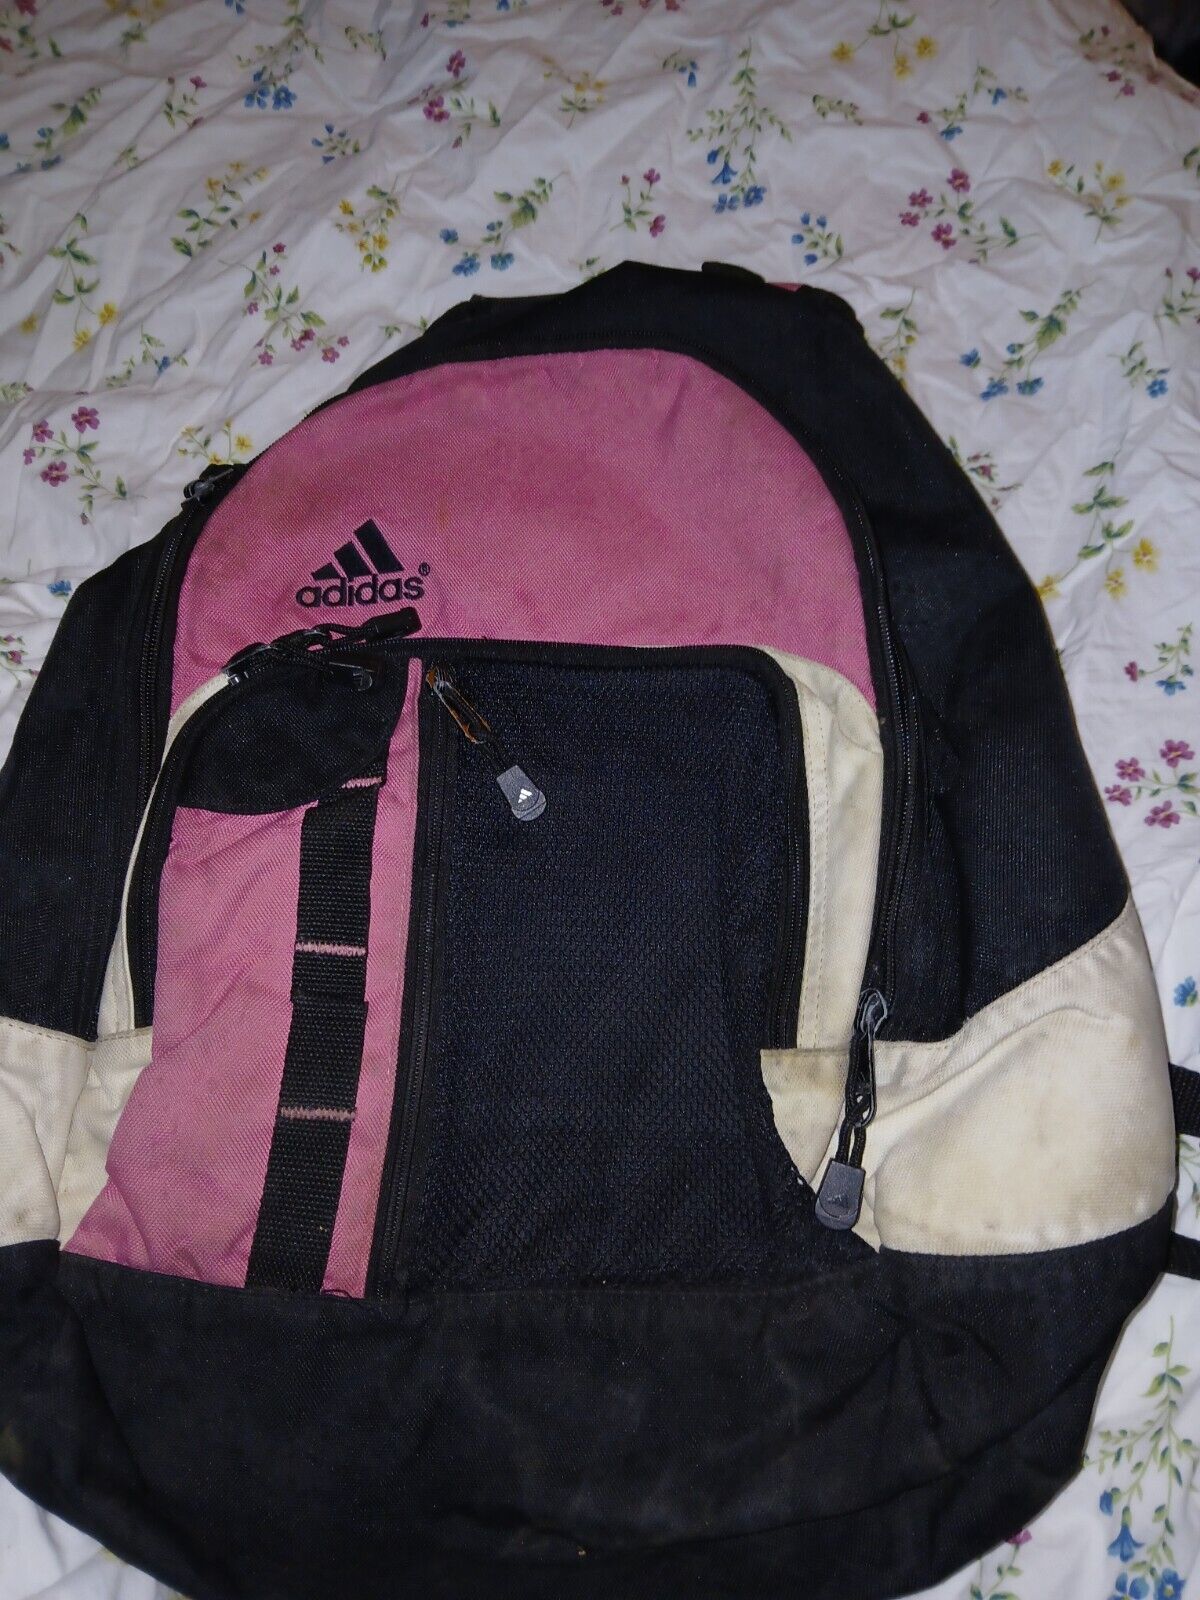 Vintage Adidas Back Pack Pink & Black Front Zip Pockets 16” Lots Of Life Left